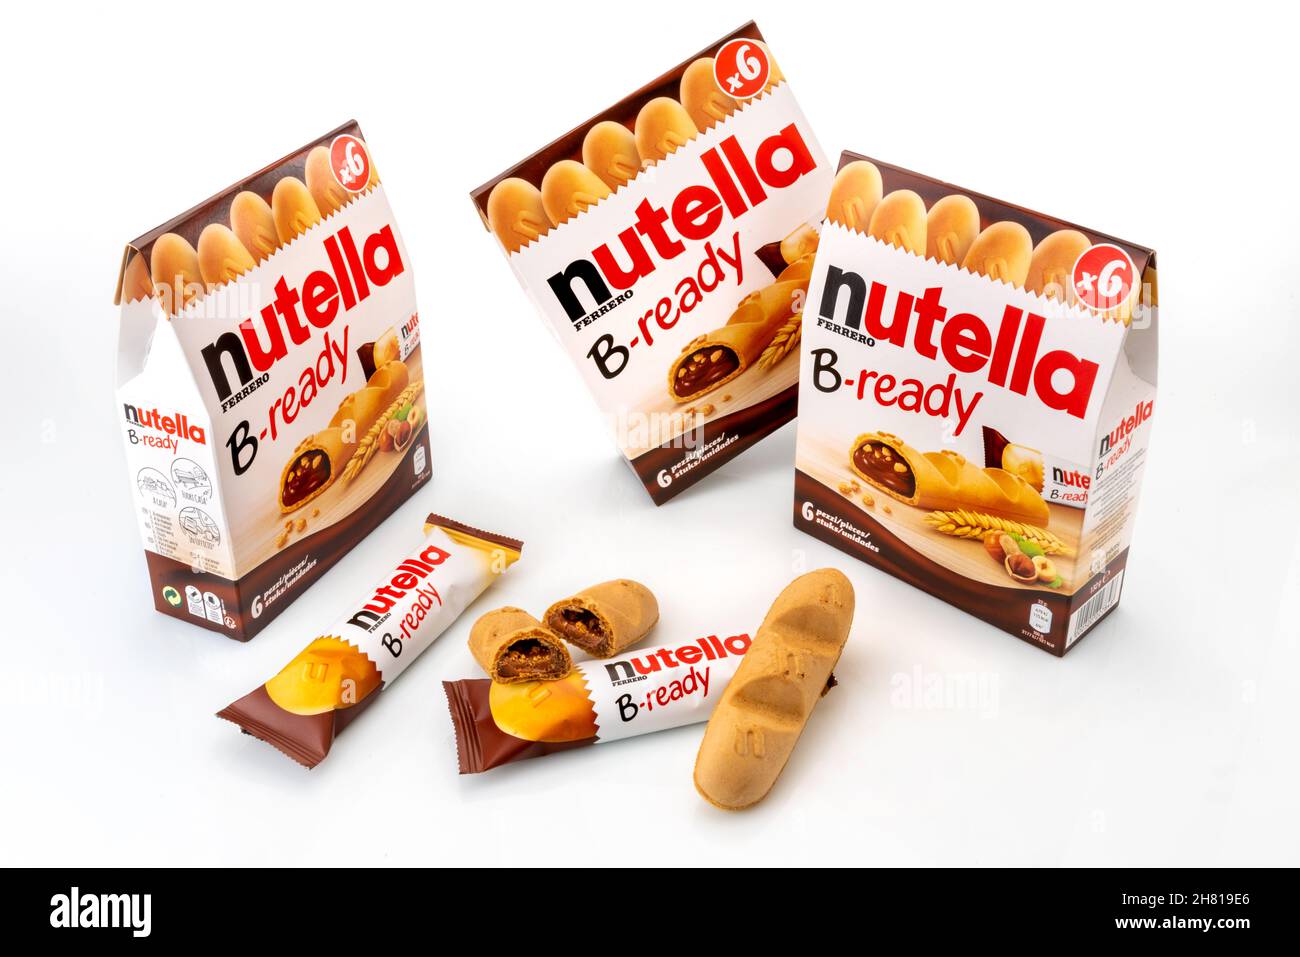 Alba, Italien - 25. November 2021: Nutella B-ready Ferrero - Waffel gefüllt  mit Nutella, Schokolade und Haselnusscreme, Packung mit sechs Keksen,  Waffelschnitt Stockfotografie - Alamy